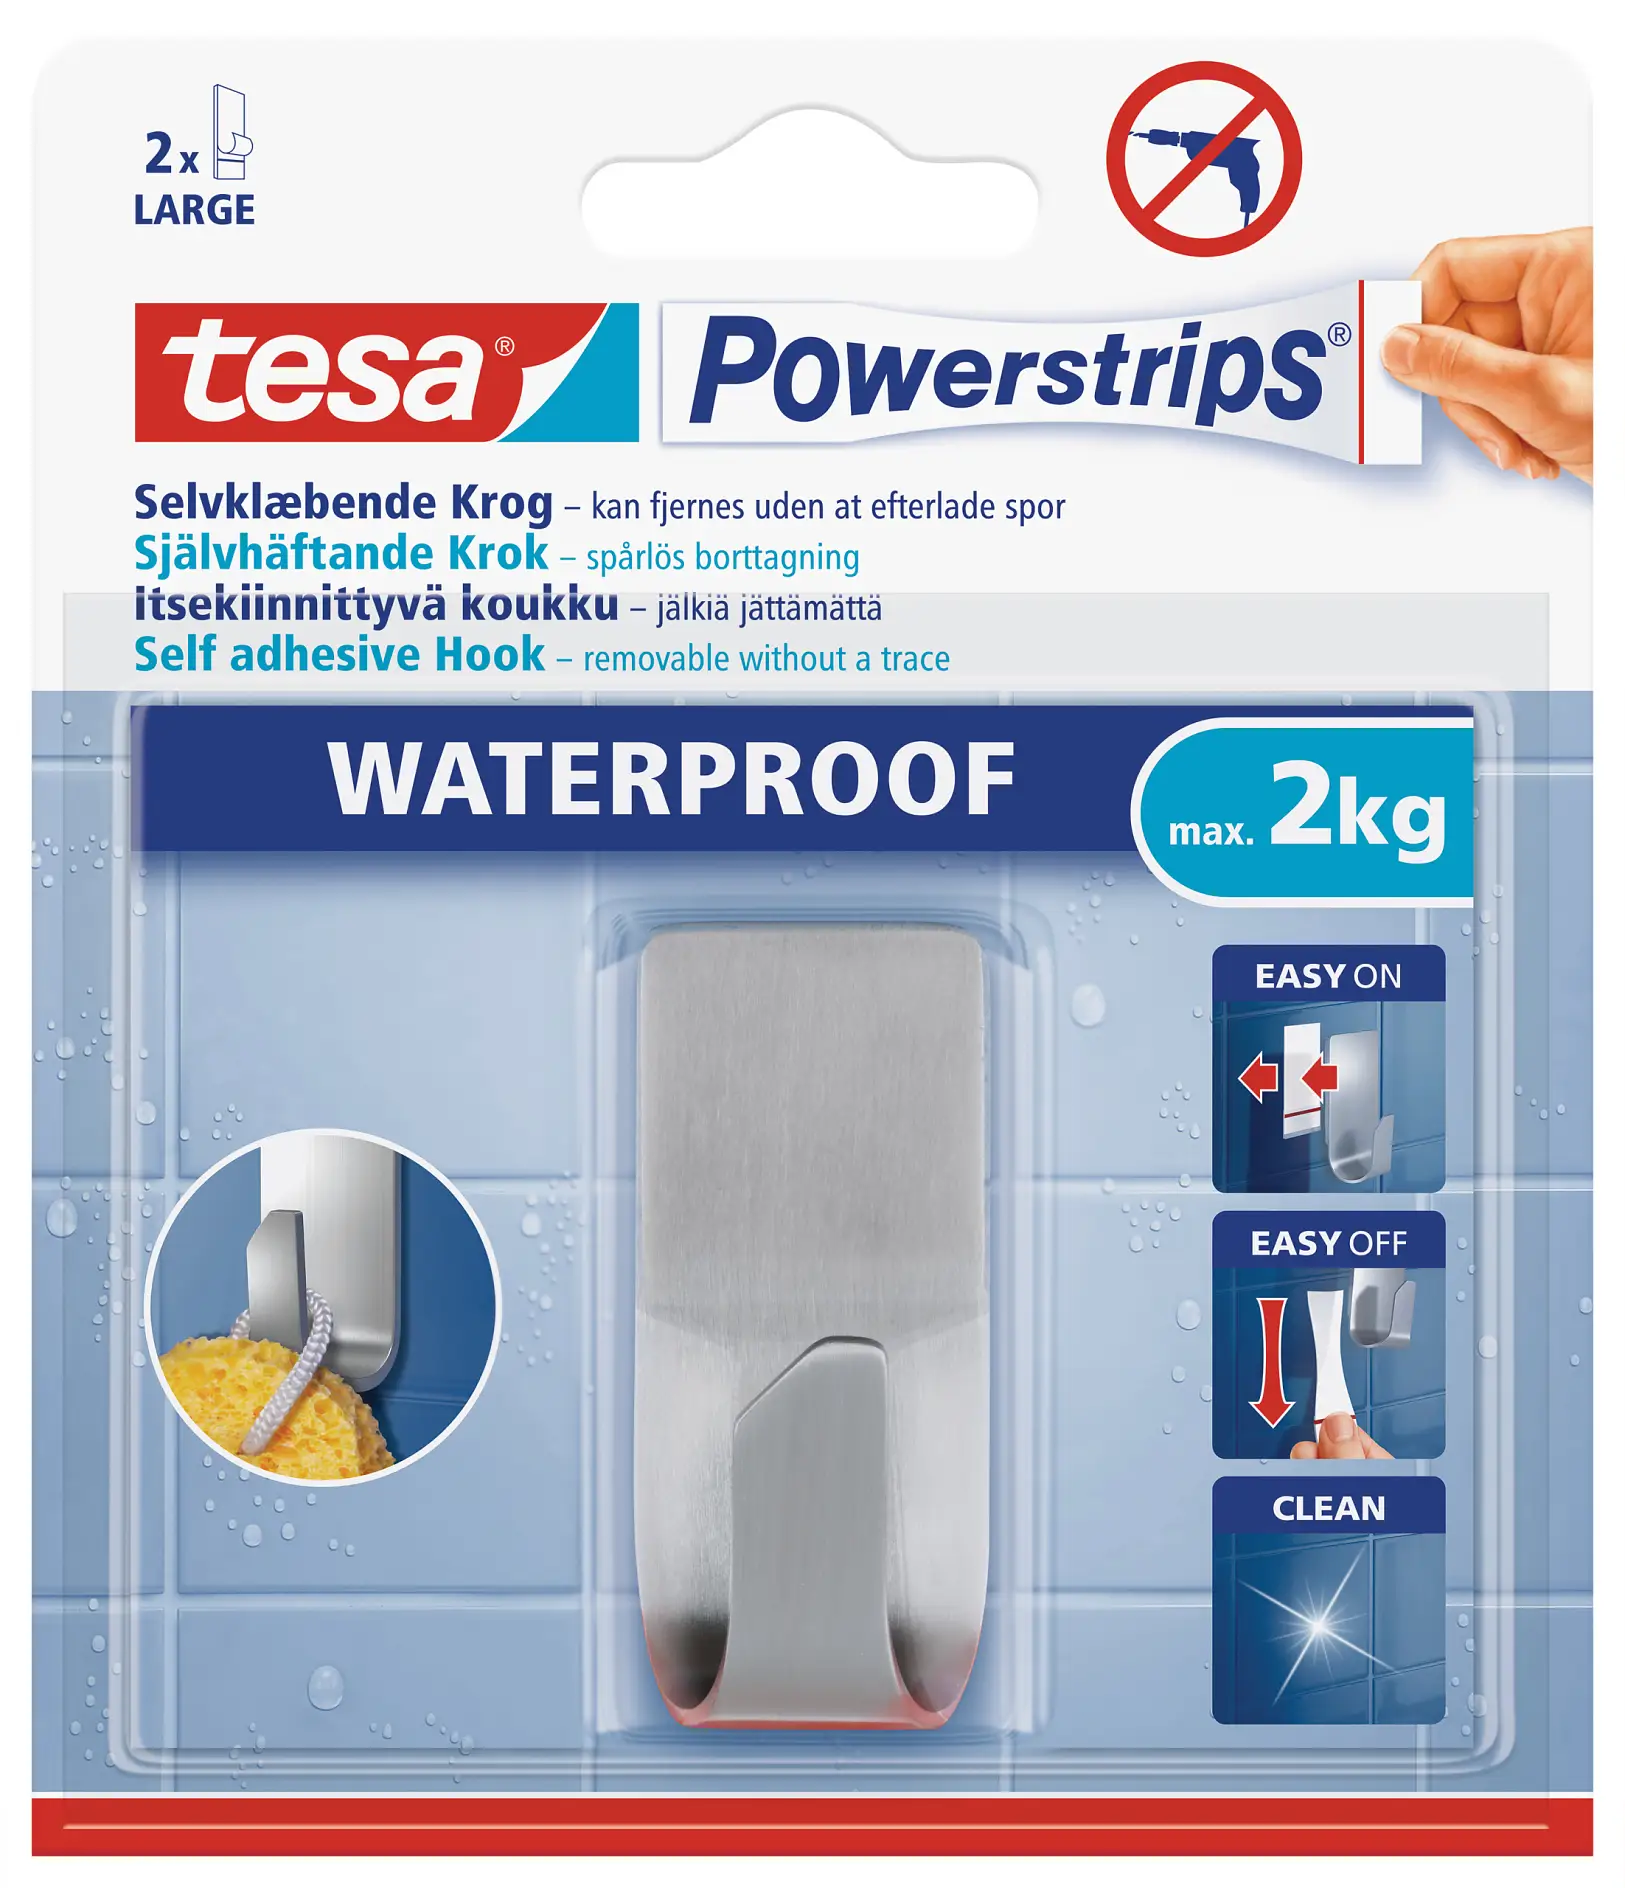 tesa Powerstrips waterproof hook zoom